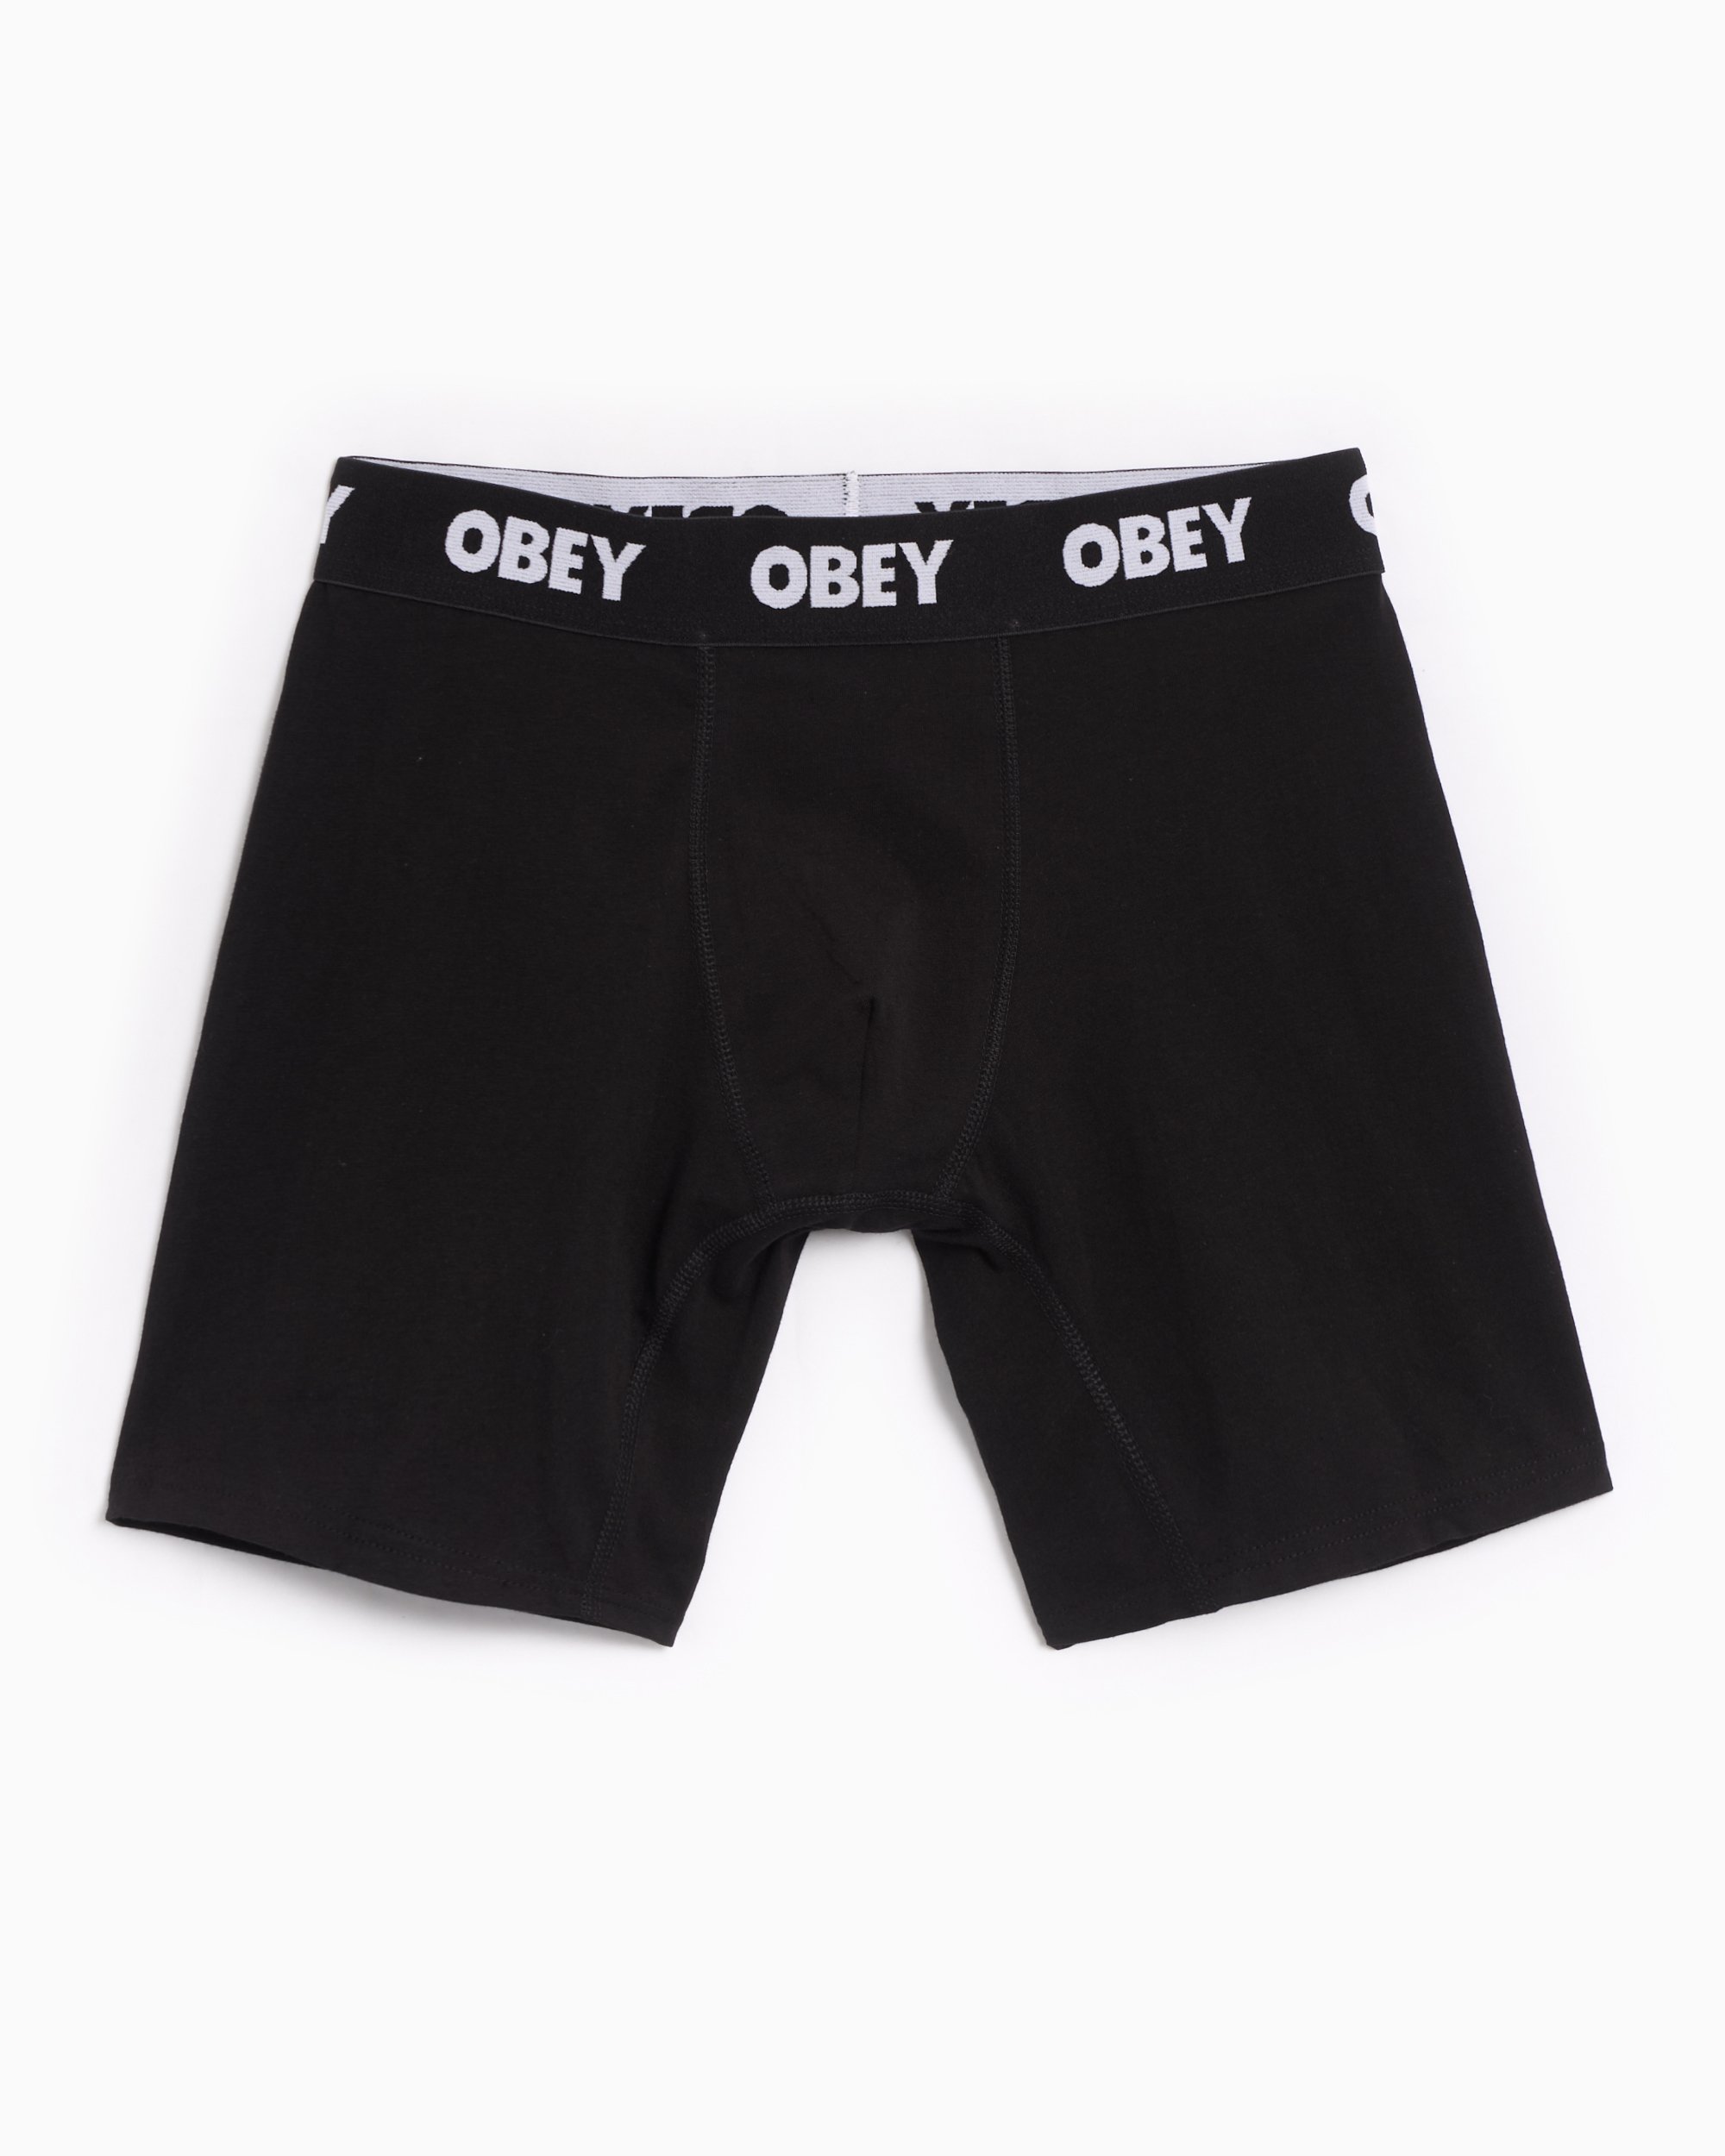 OBEY Clothing Established Work Men's Boxers Black 100090000-BLK